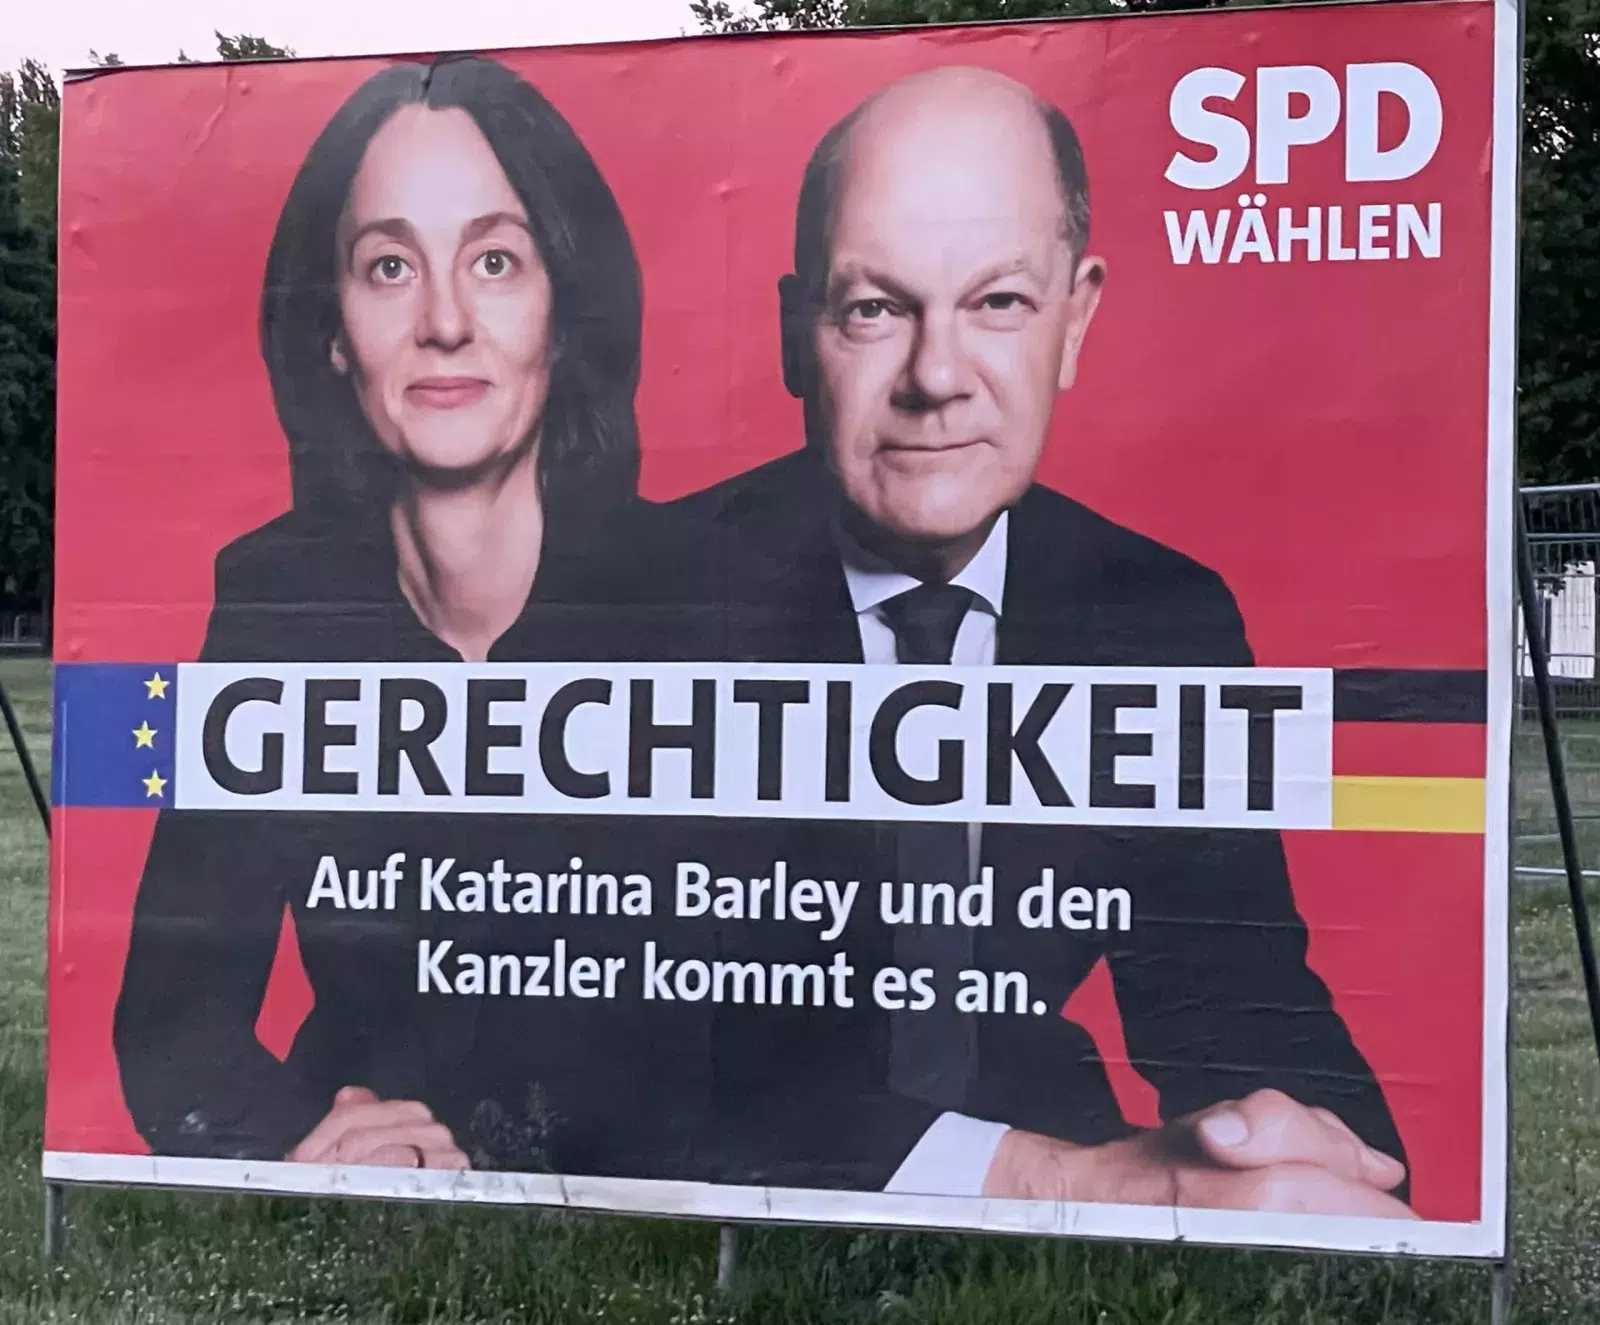 SPD Wahlplakat für die Europawahl mit Katarina Barley und Olaf Scholz. 